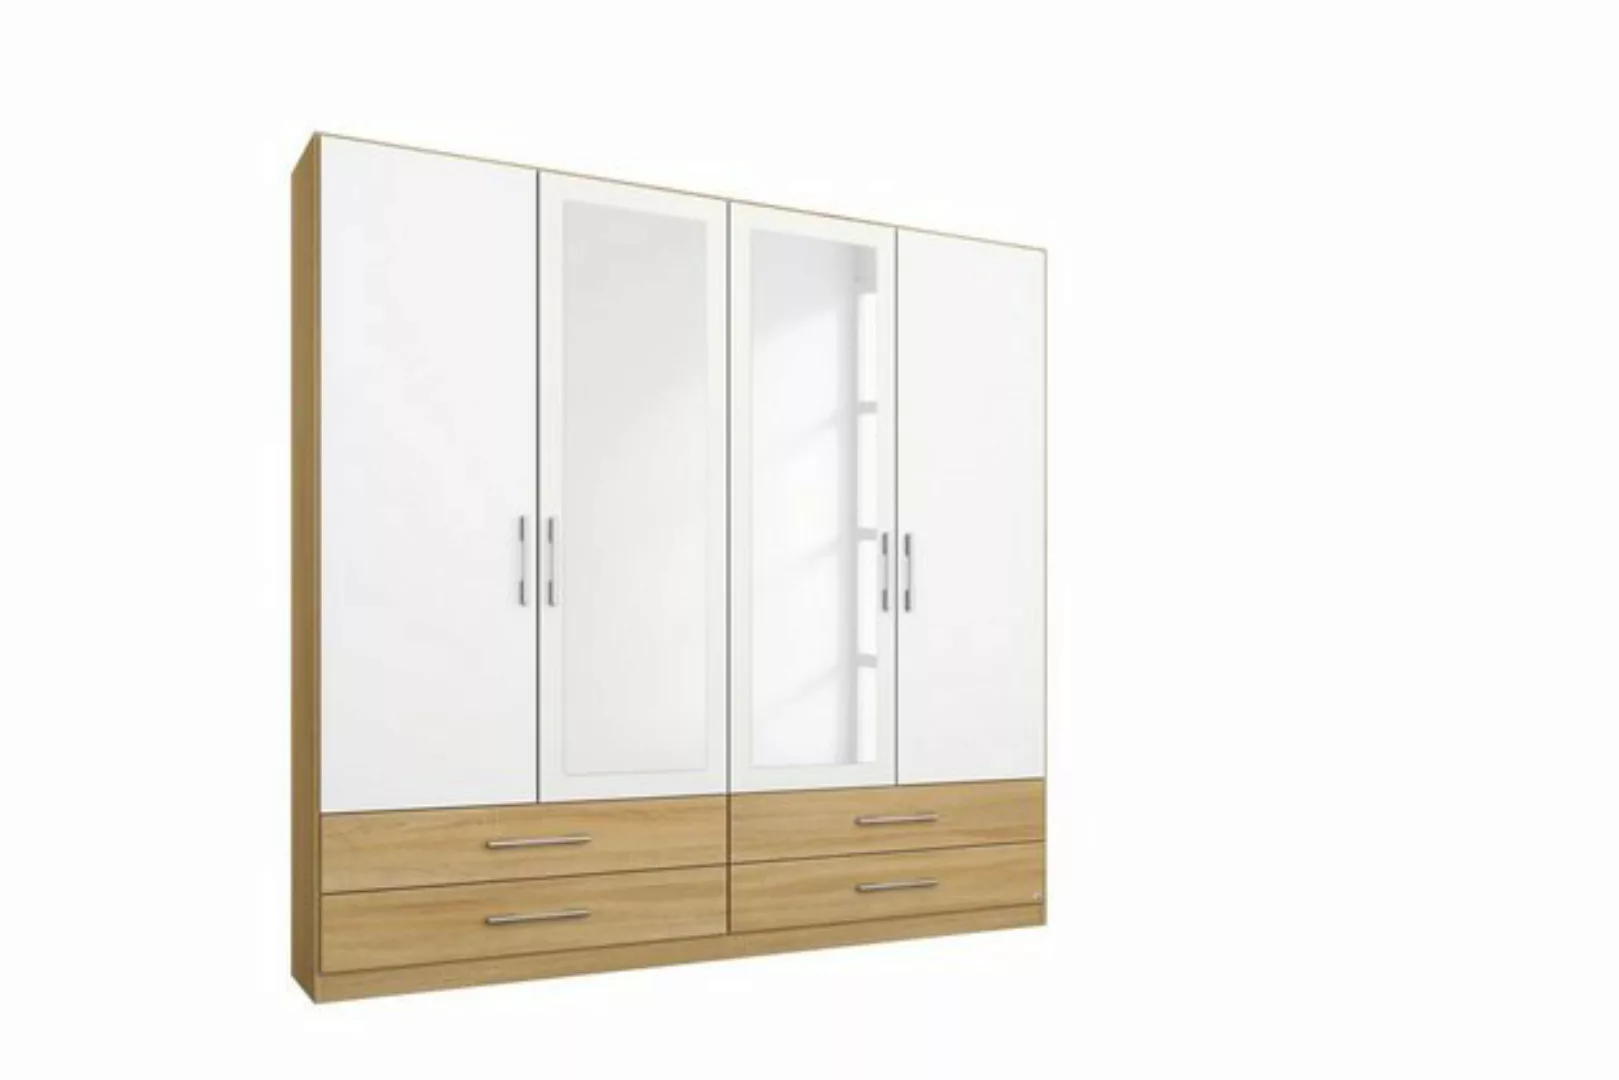 Kindermöbel 24 Spiegelschrank Finn beige - weiß 4 Türen B 181 cm - H 210 cm günstig online kaufen